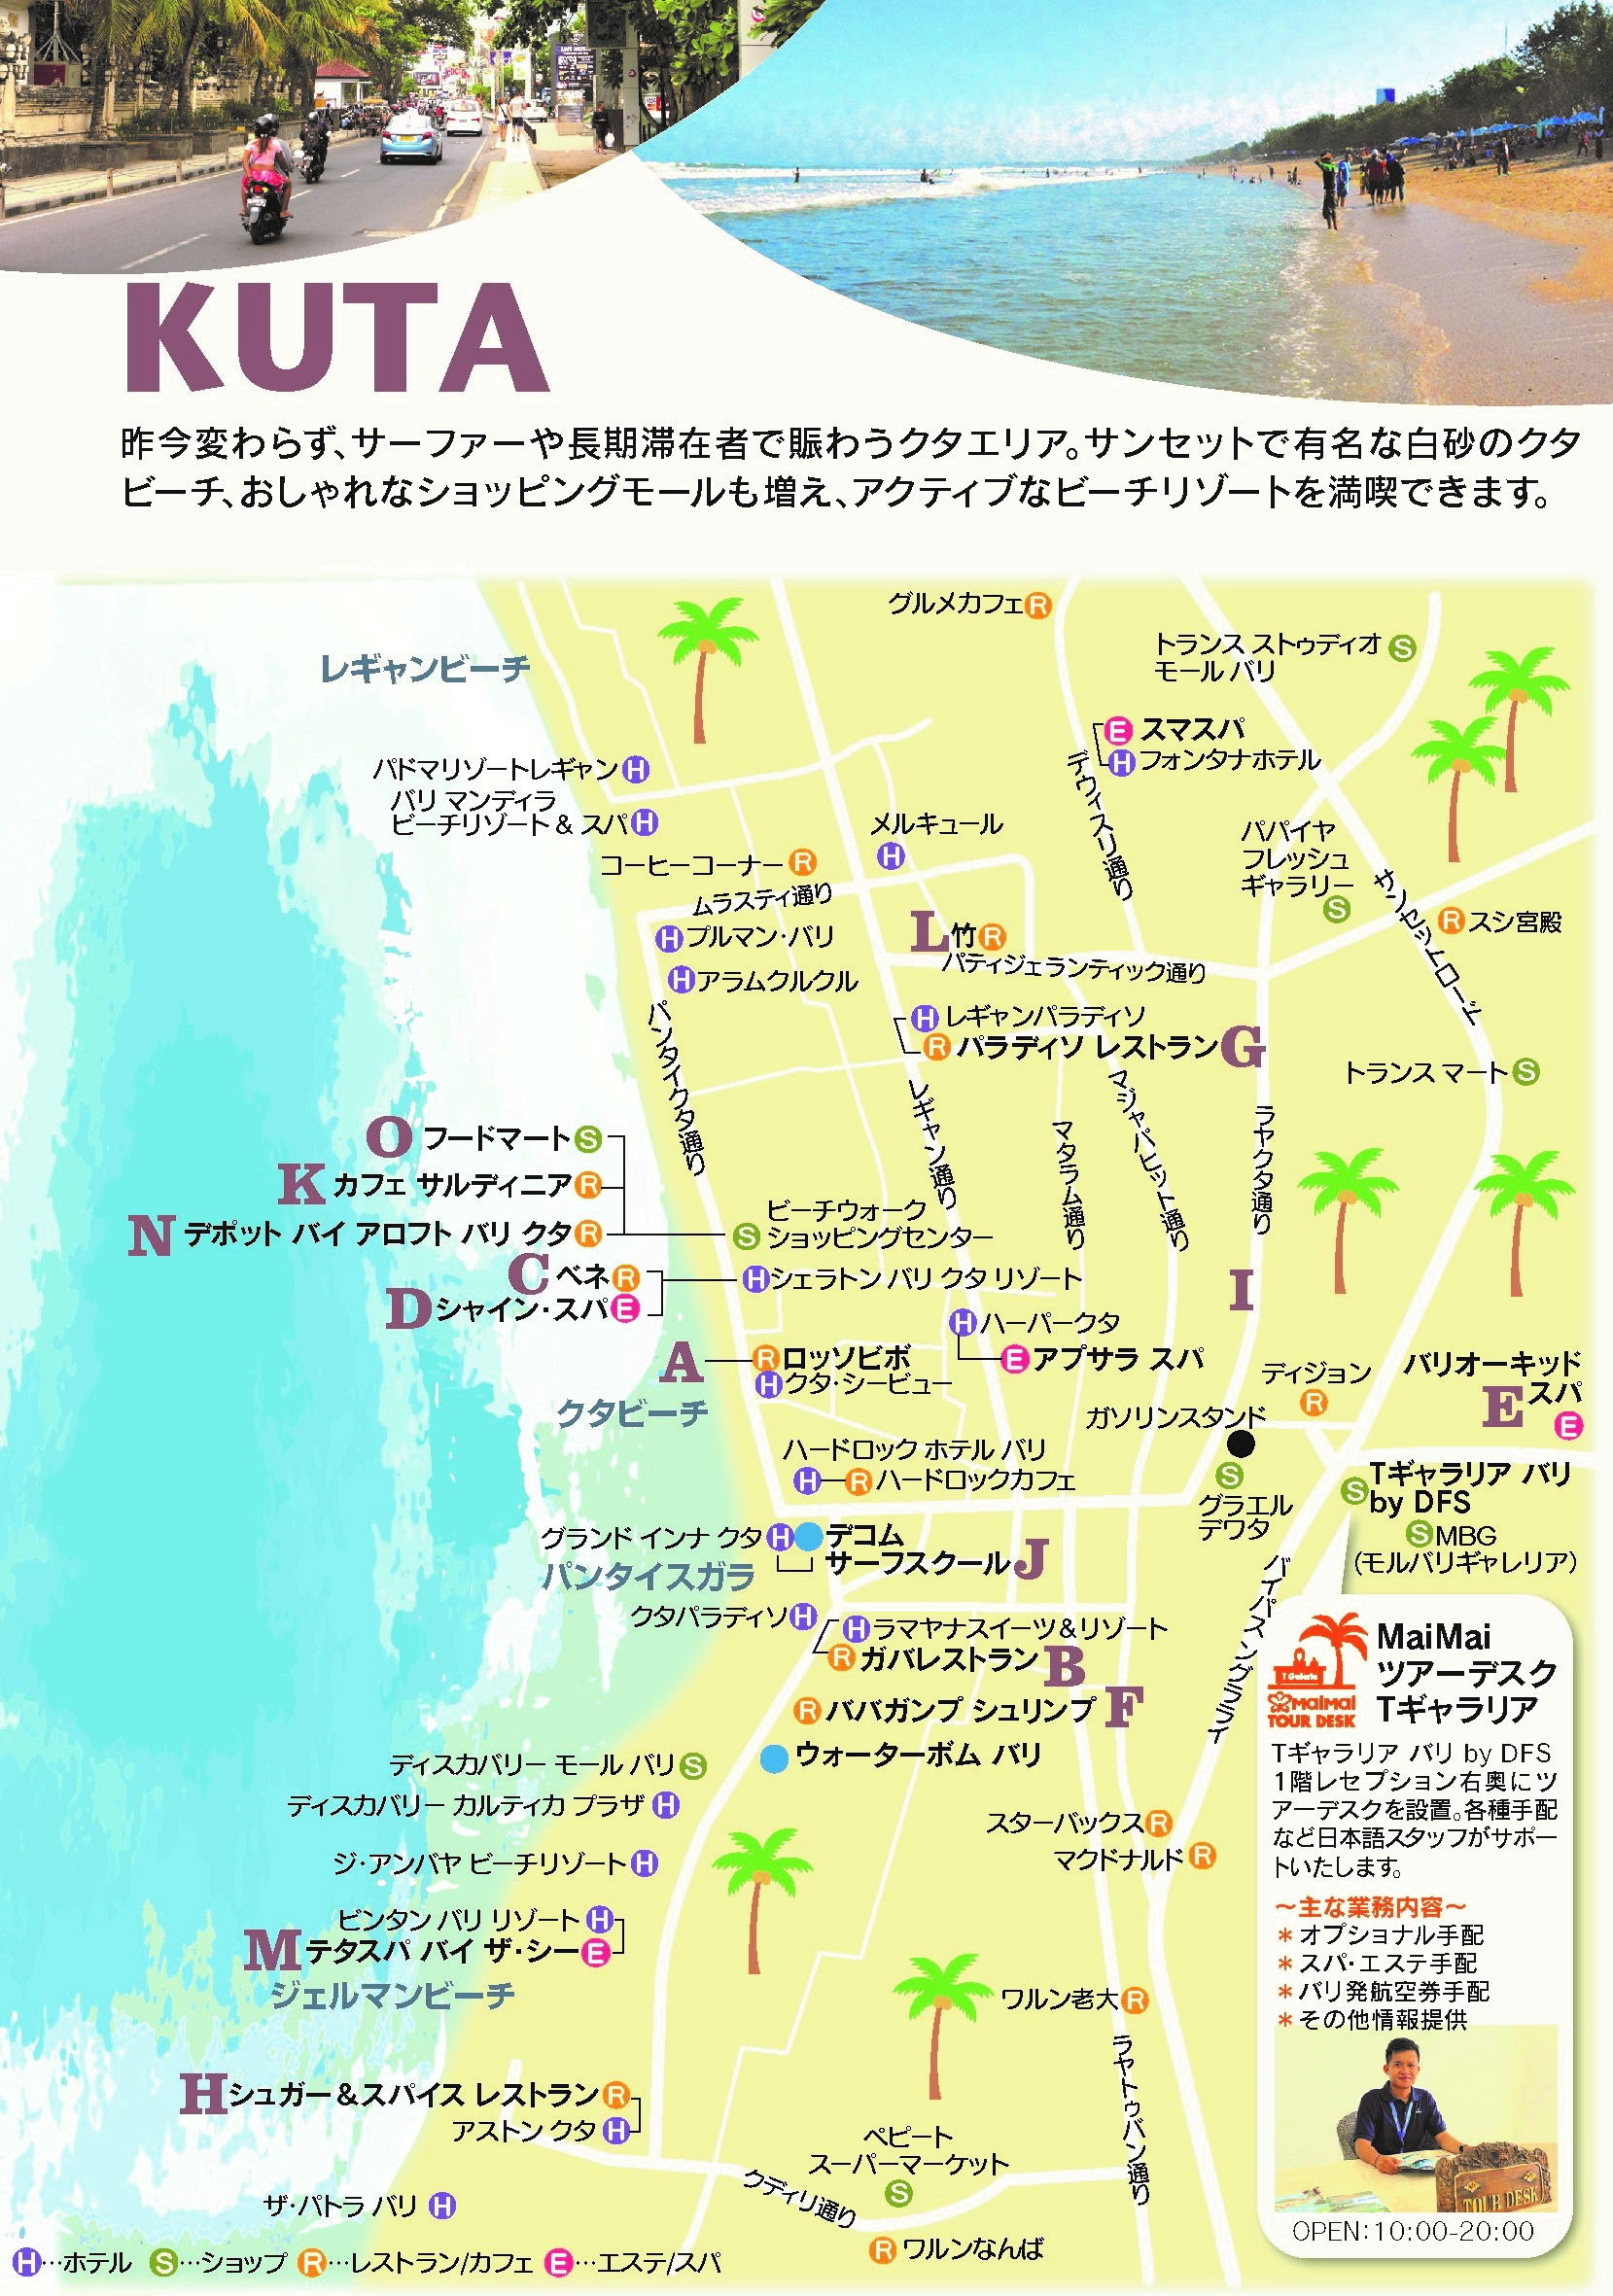 P28-29(kuta) KUTA MAP.jpg